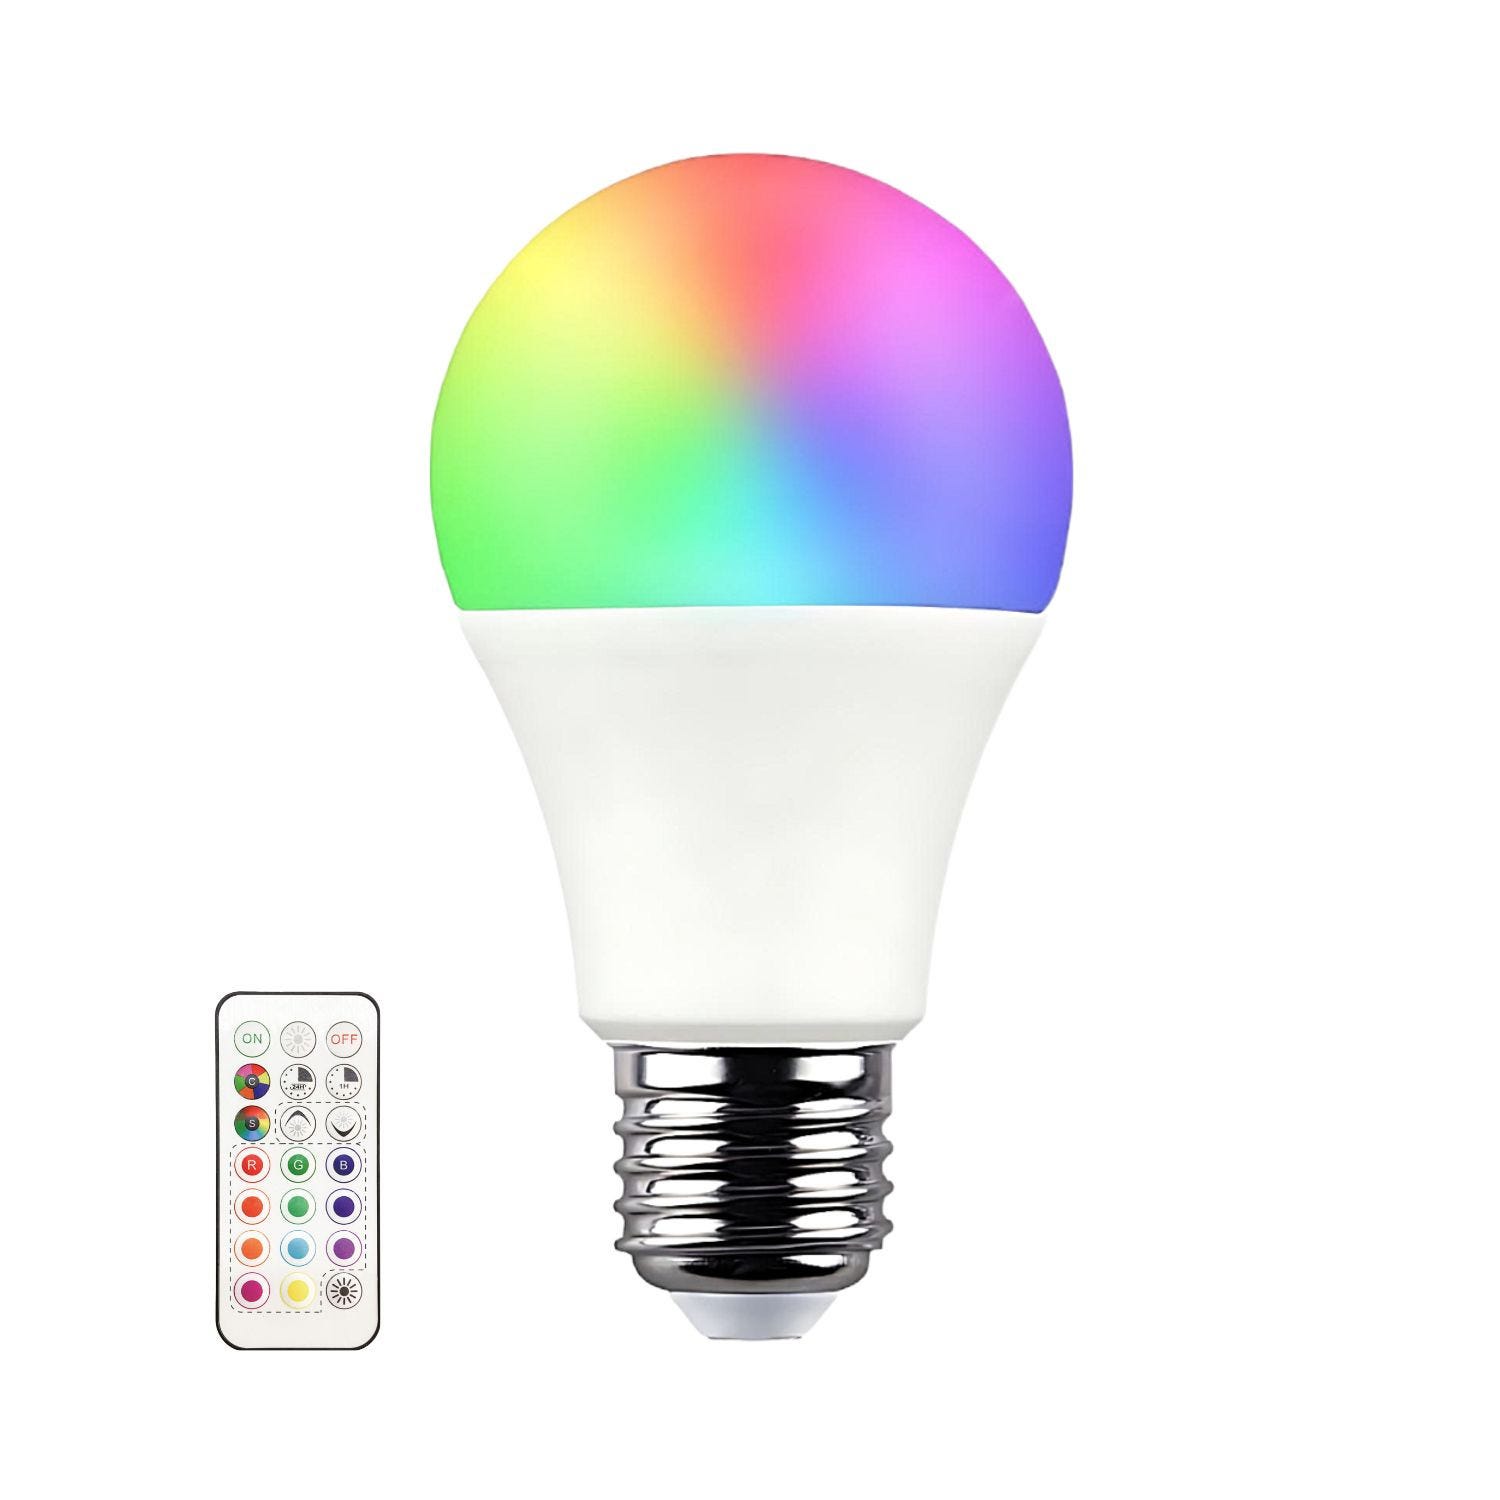 Elettrico-store materiale elettrico online al miglior prezzo - LAMPADINA  LAMPADA LED RGB TELECOMANDO LUCE MULTICOLOR E27 E14 RGB+TELECOMANDO